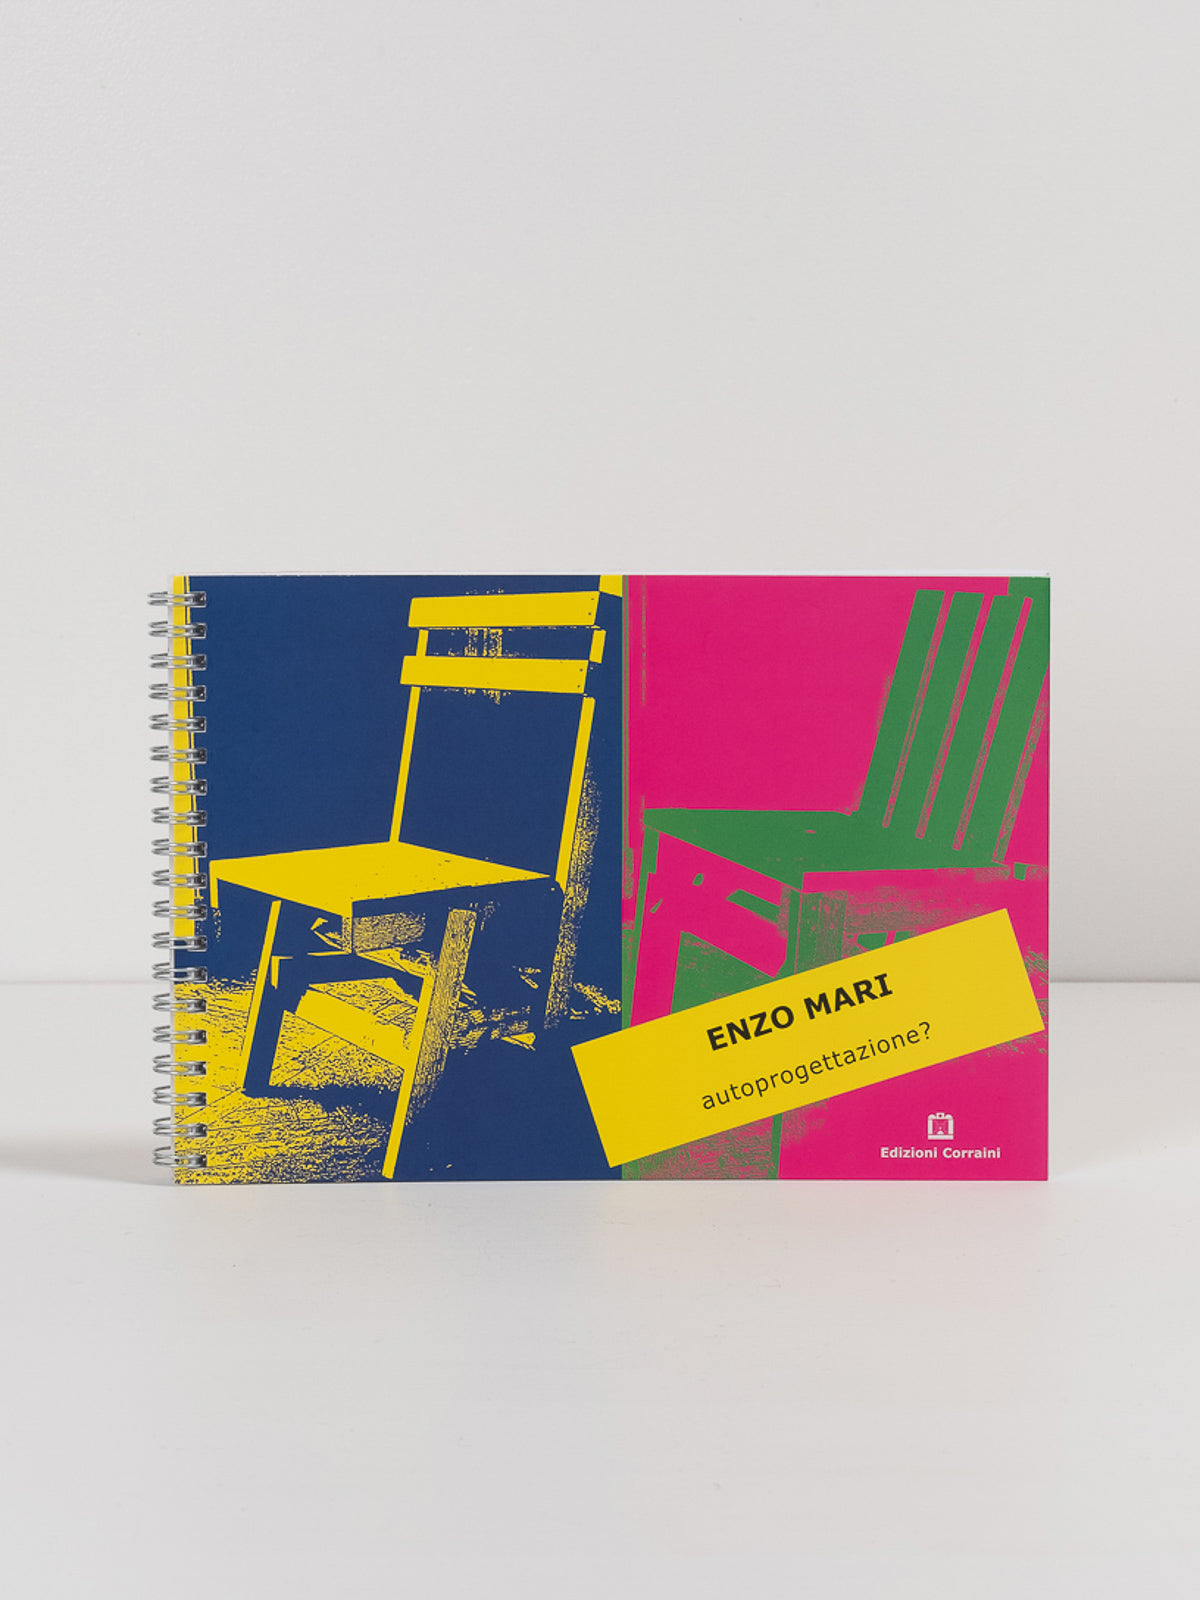 Enzo Mari, Autoprogettazione DIY Furniture Manual